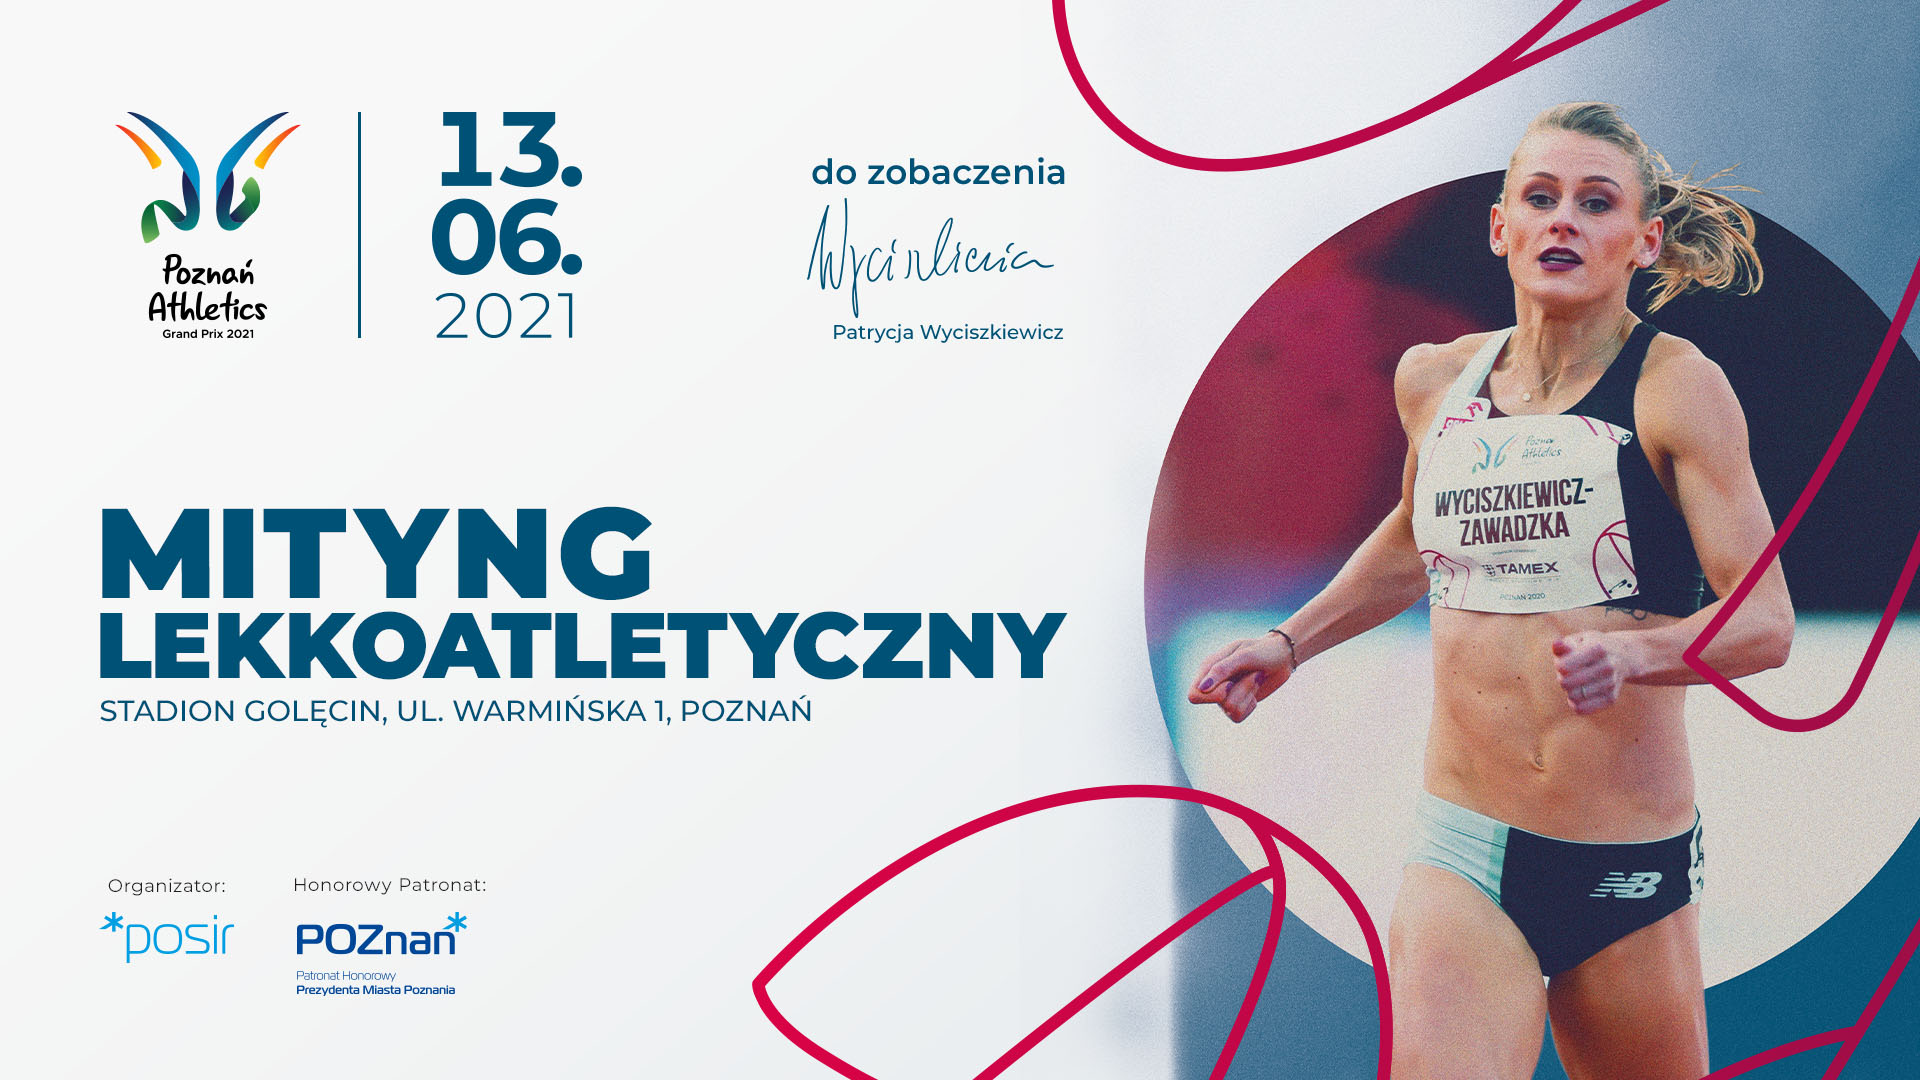 Plakat imprezy biegnąca Patrycja Wyciszkiewicz, napis Mityng Lekkoatletyczny Stadion Golęcin ul. Warmińska Poznań 13.06.2021 i logo imprezy